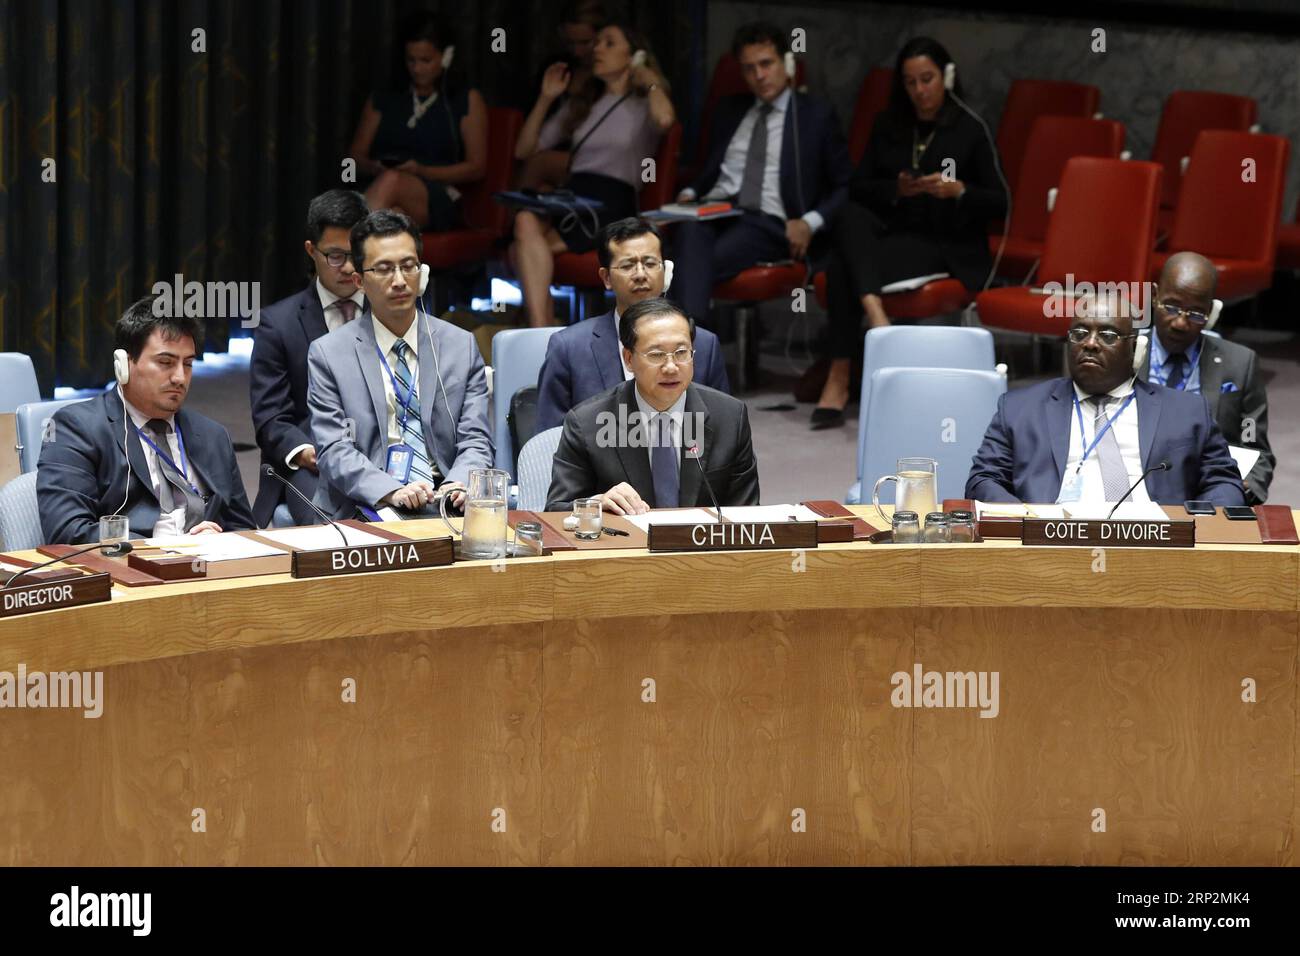 (180907) -- NATIONS UNIES, 7 septembre 2018 -- Ma Zhaoxu(C, front), le représentant permanent chinois auprès de l'ONU, s'adresse à la réunion du Conseil de sécurité sur la situation en Syrie, au siège de l'ONU à New York, le 6 septembre 2018. L'envoyé spécial de la Chine à l'ONU a déclaré jeudi lors d'une réunion du Conseil de sécurité que tous les incidents présumés liés aux armes chimiques devaient faire l'objet d'enquêtes exhaustives, objectives et impartiales, abordant les récents rapports qui évoquent de possibles attaques chimiques en Syrie. (yk) CONSEIL DE SÉCURITÉ des Nations Unies-SYRIE LixMuzi PUBLICATIONxNOTxINxCHN Banque D'Images